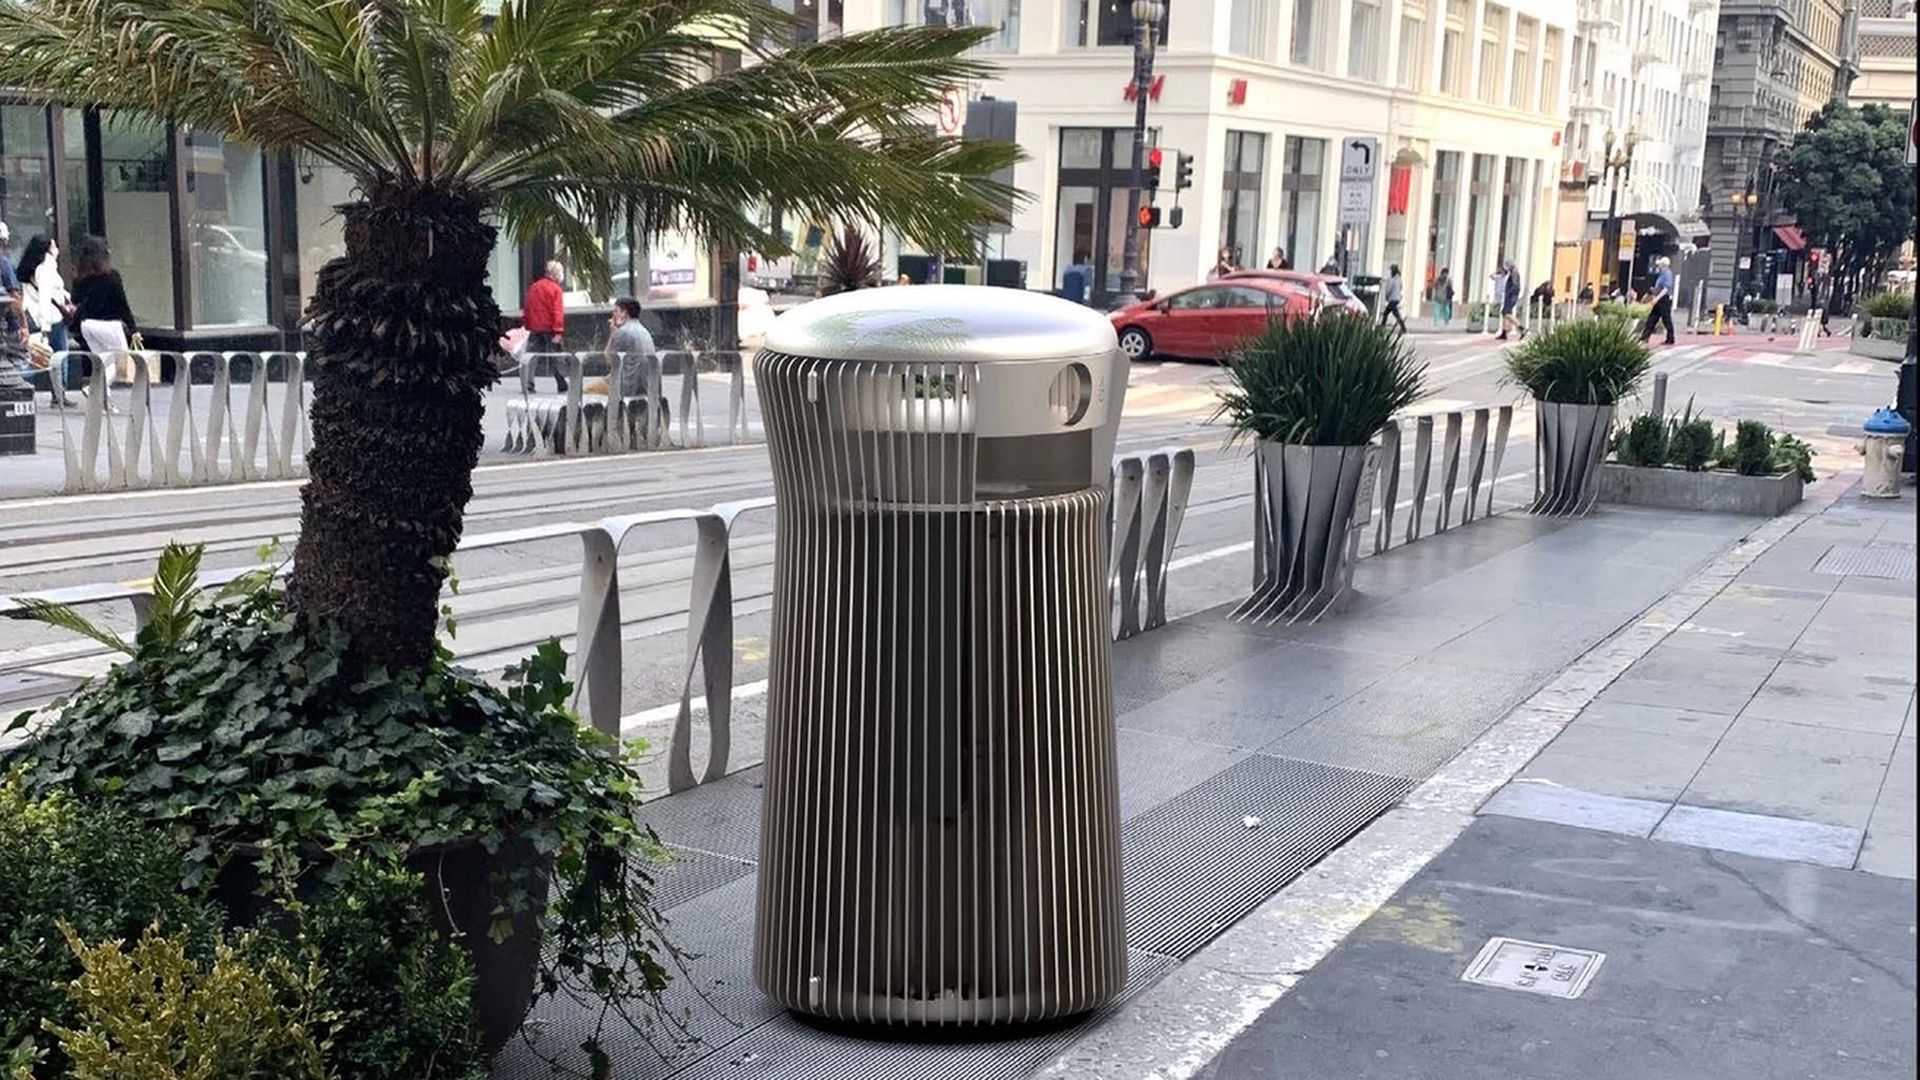 Silver trash can on the sidewalk.